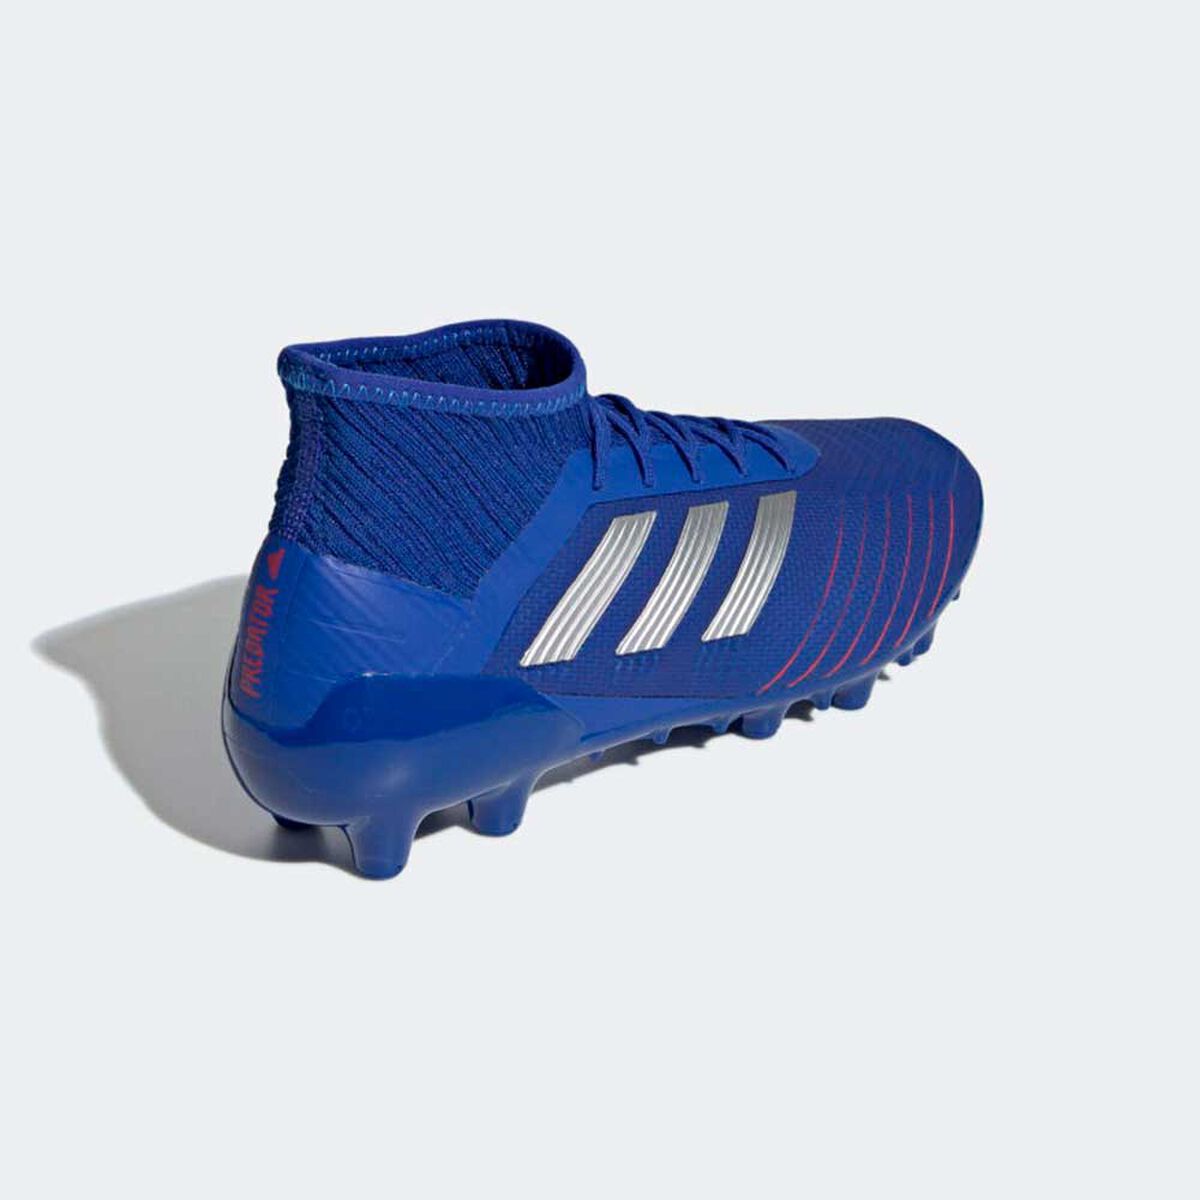 Zapato De Adidas Predator 19.2 Hg | en laPolar.cl